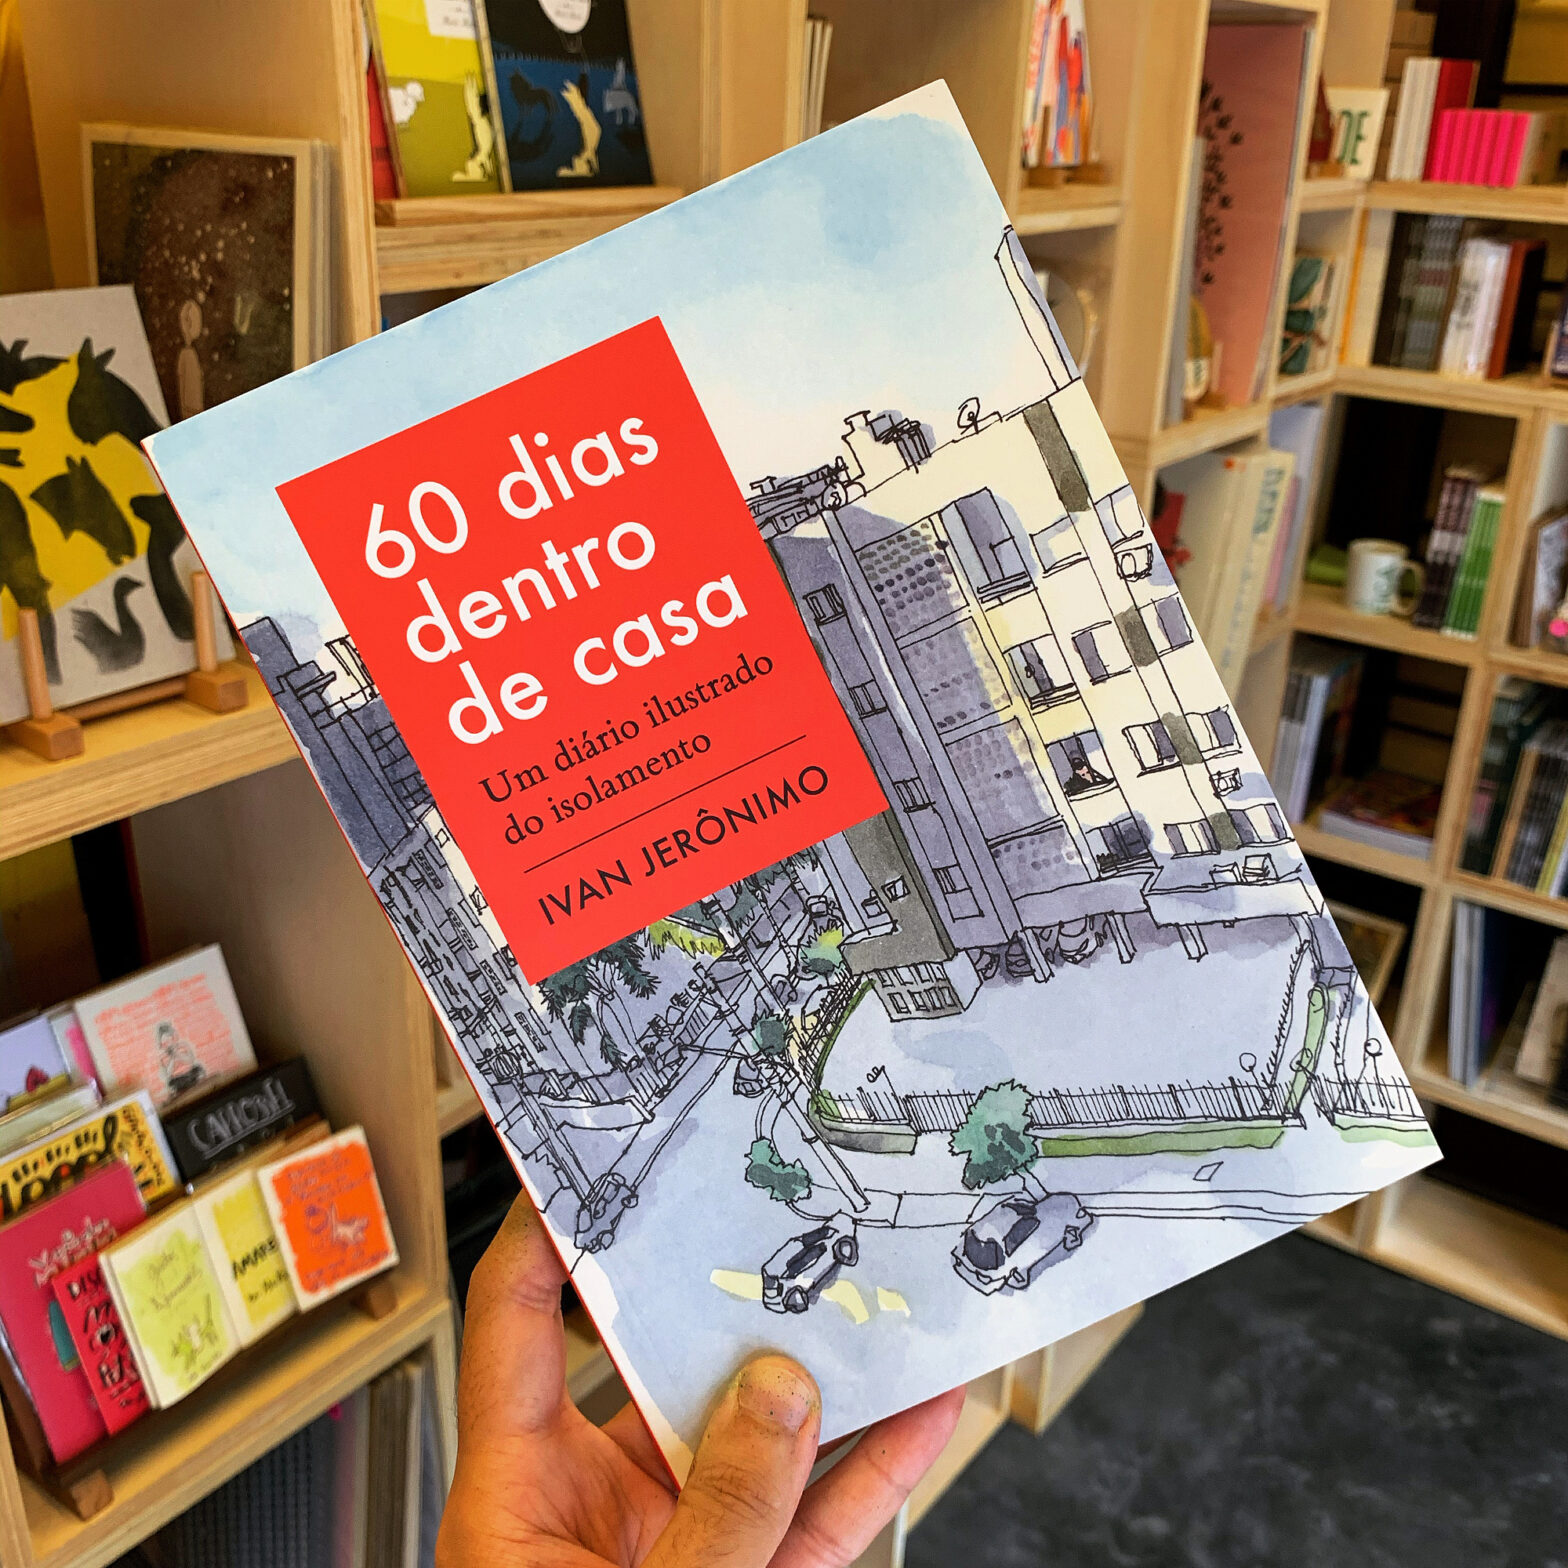 Foto de mão segurando o livro “60 dias dentro de casa – Um diário ilustrado do isolamento” entre as estantes no interior da Banca Curva